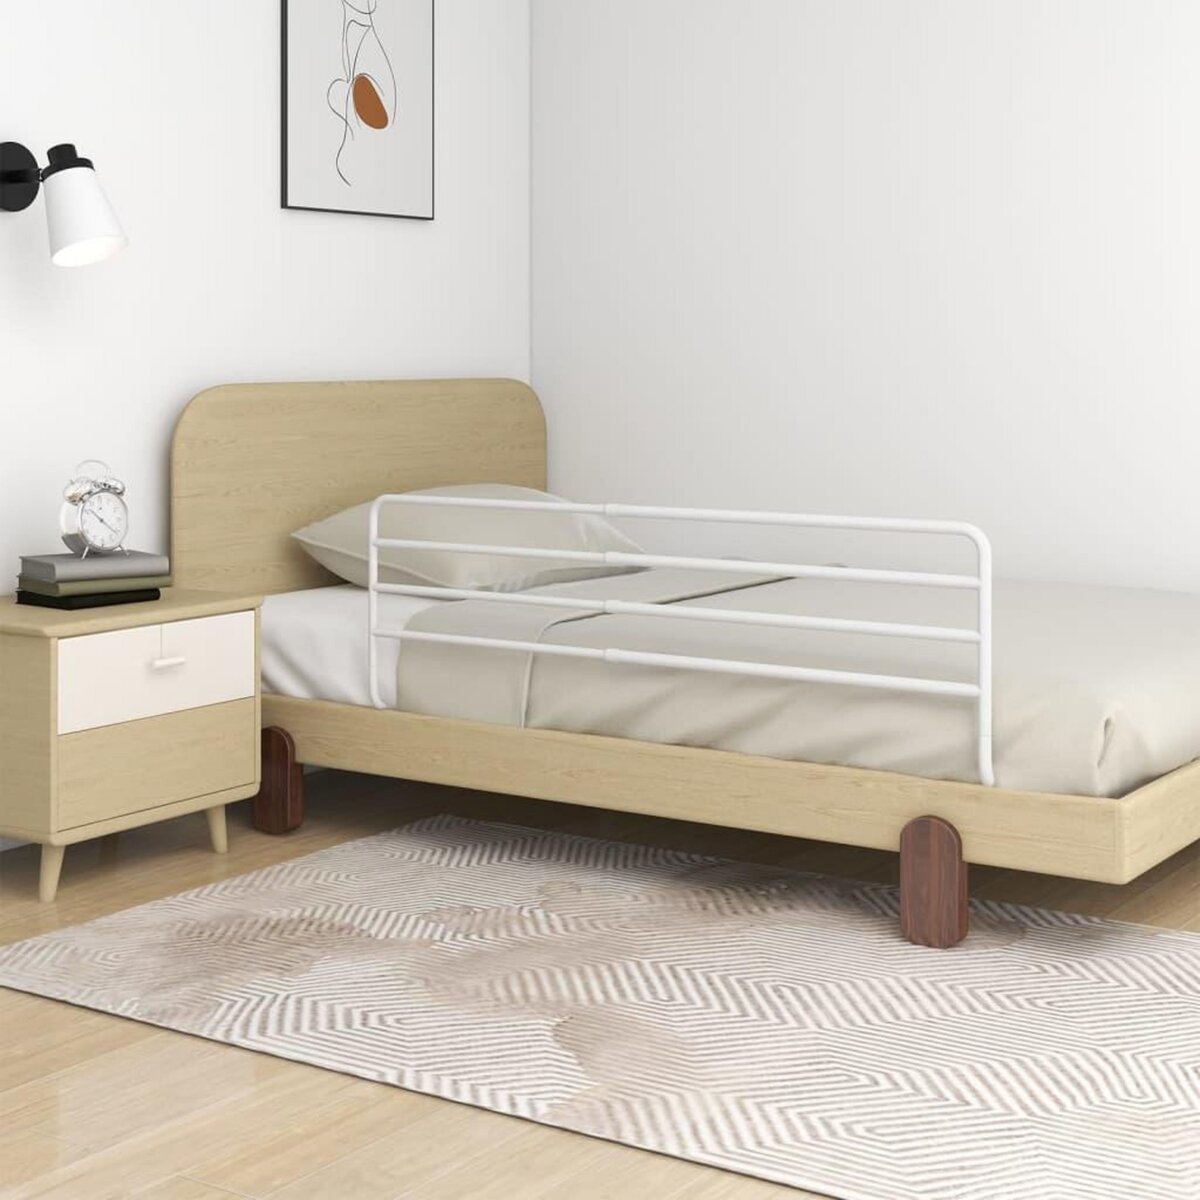 VIDAXL Barriere de securite de lit d'enfant Blanc (76-137)x55 cm Fer